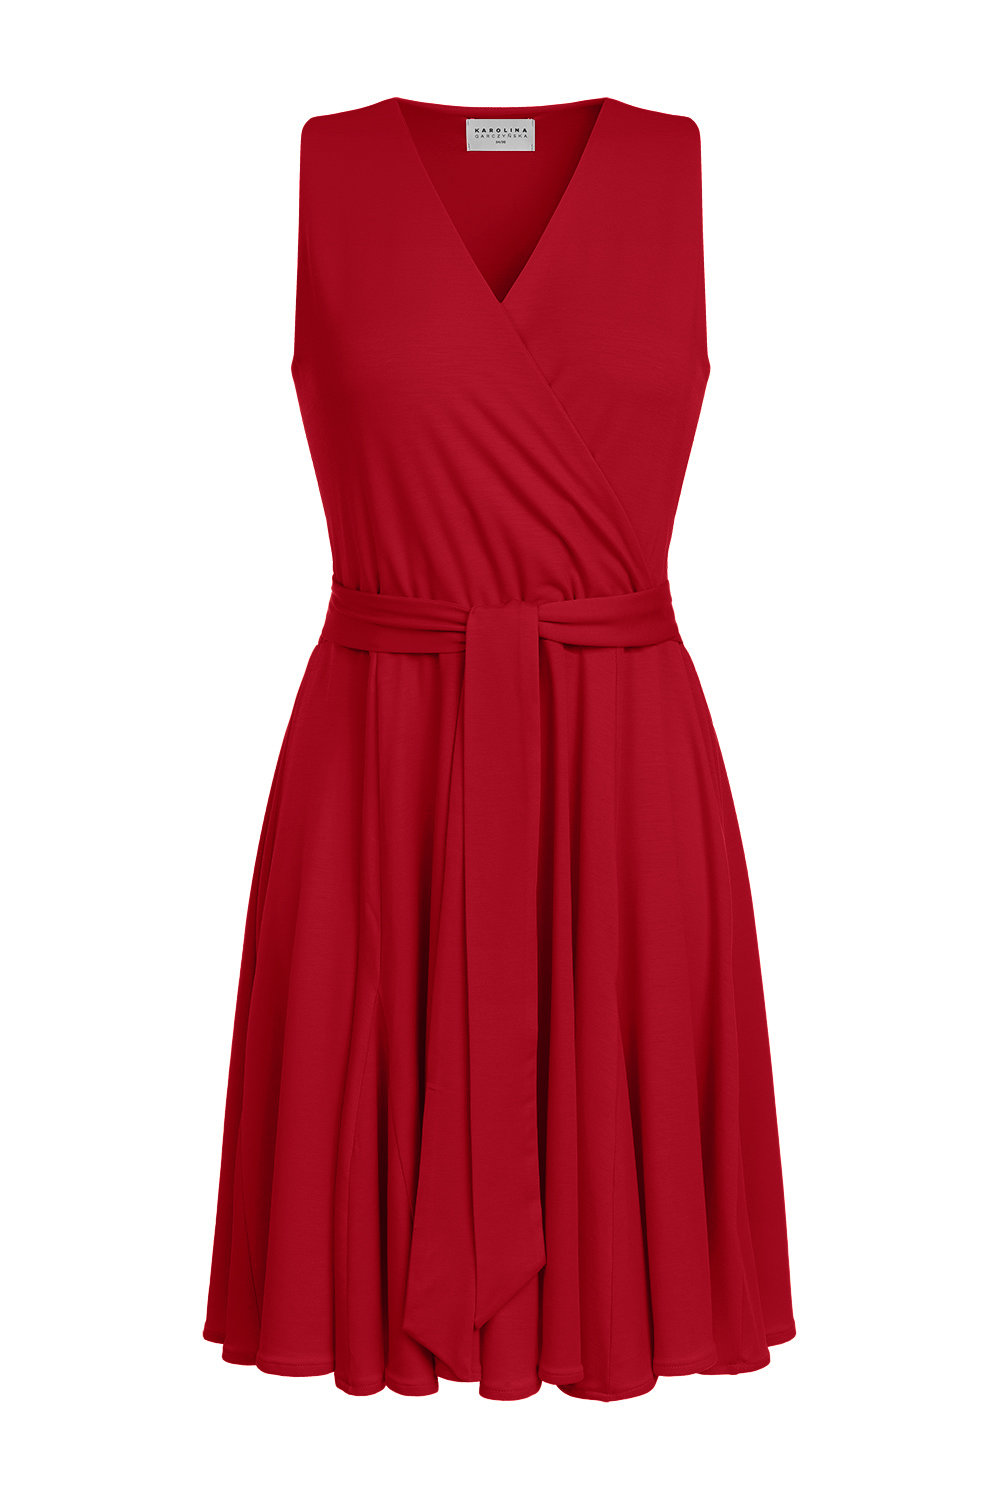 Gisele Mini - czerwona sukienka bez rękawów z godetami PANTONE Jester Red